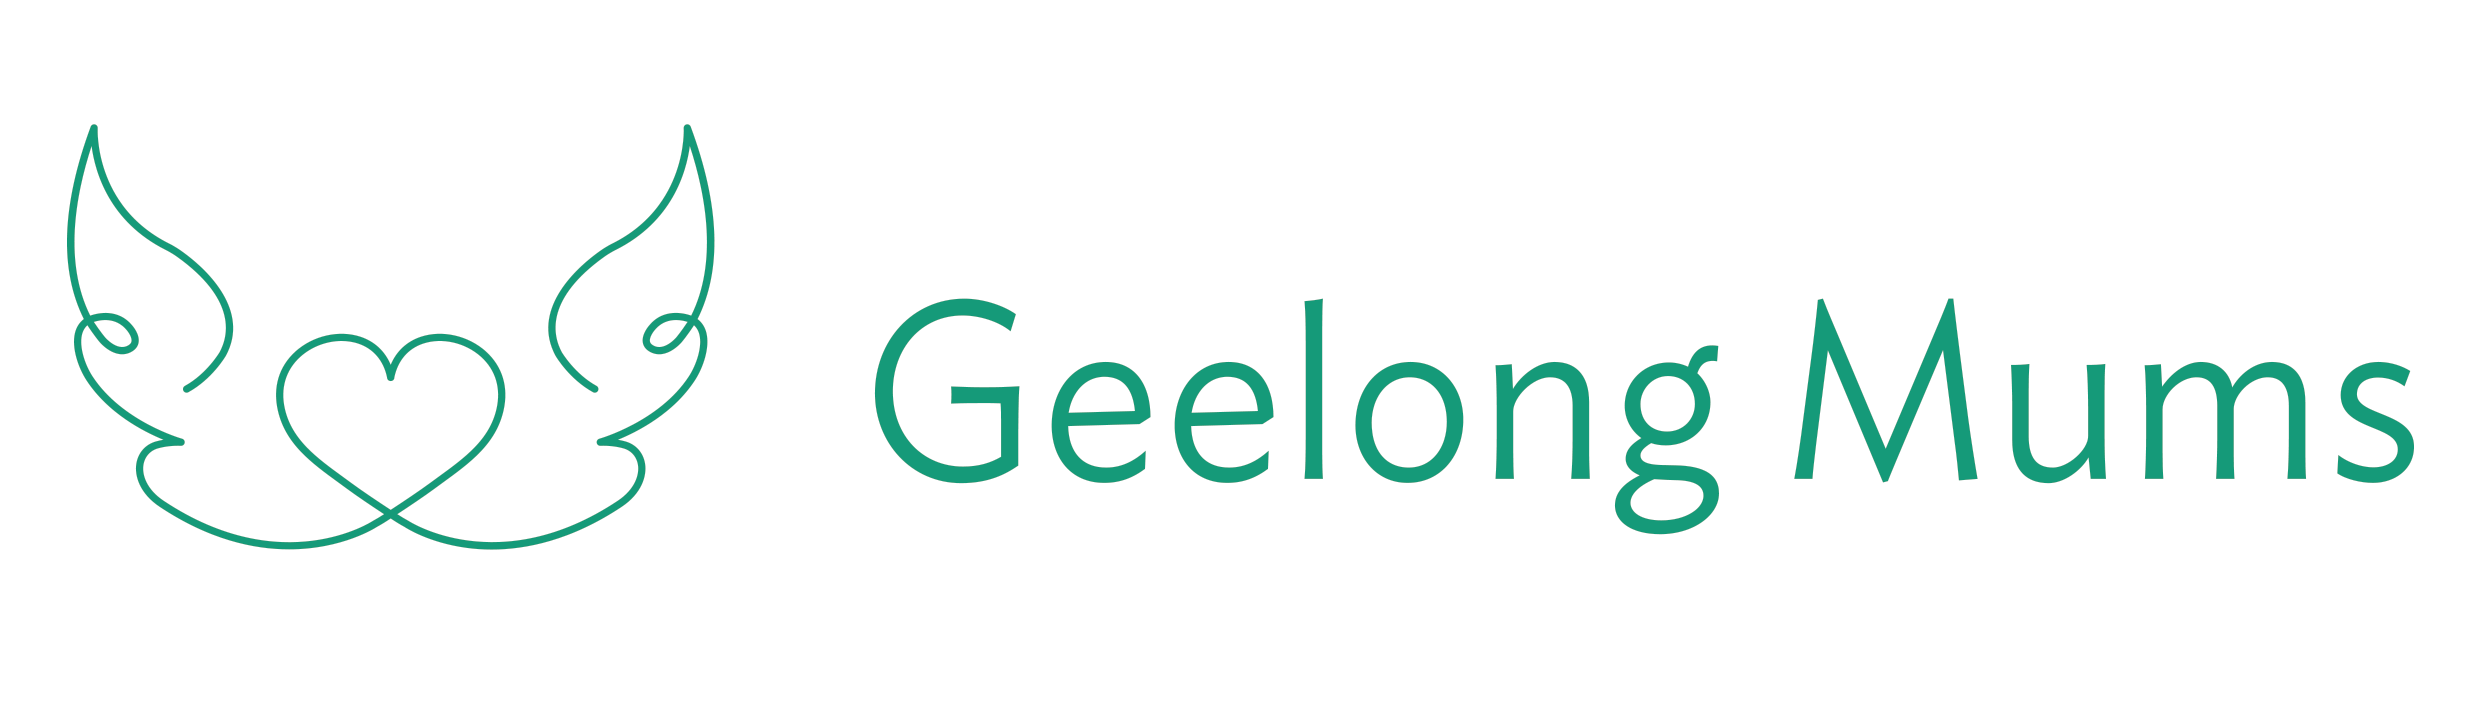 Geelong Mums logo